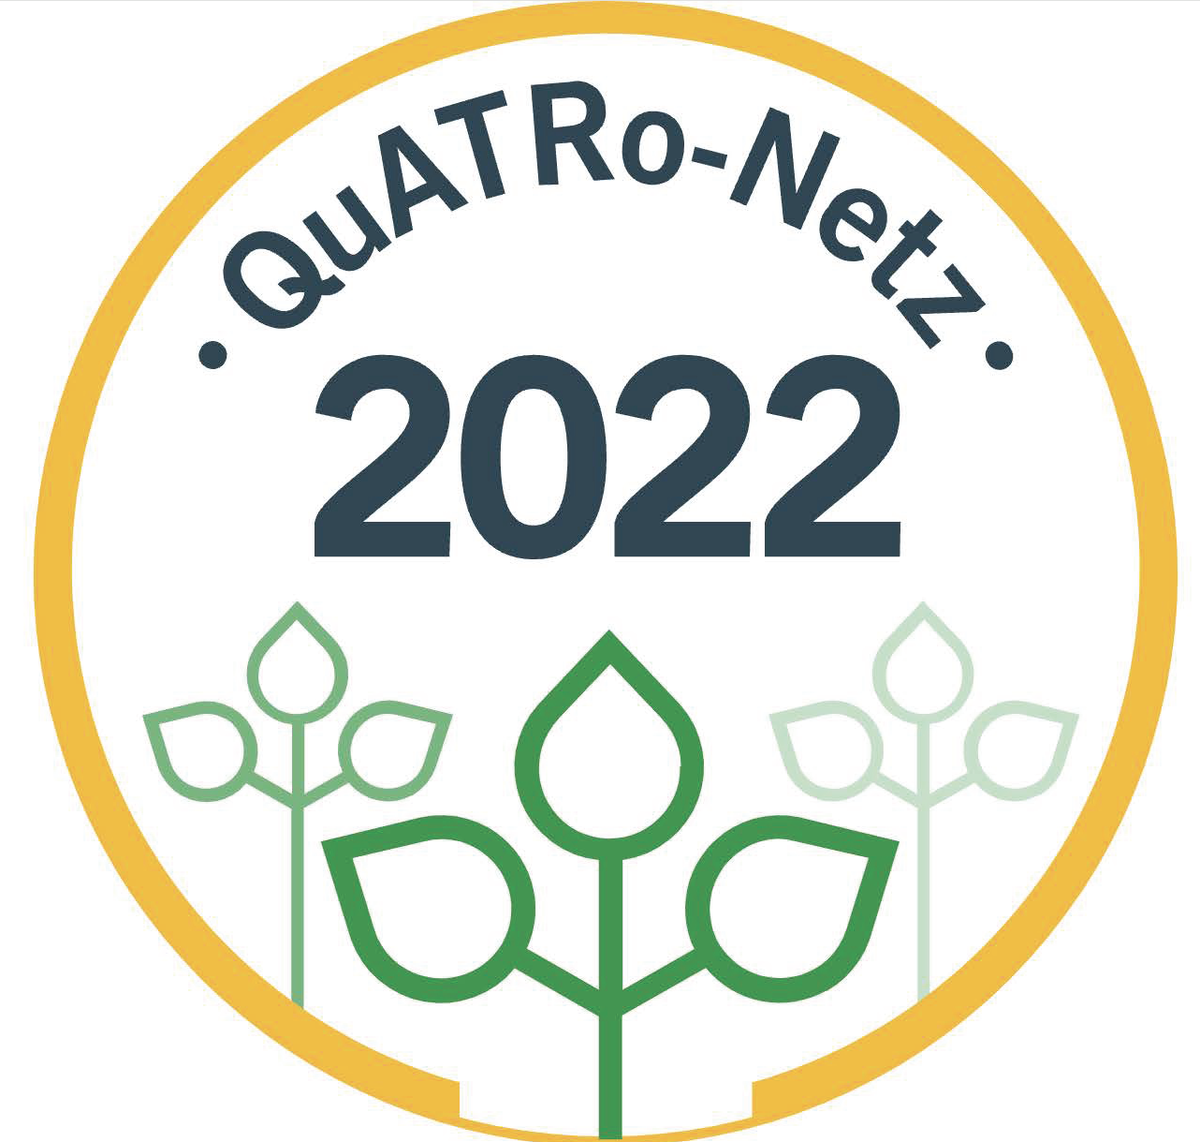 QuATRo-Signet 2022 (Gold)